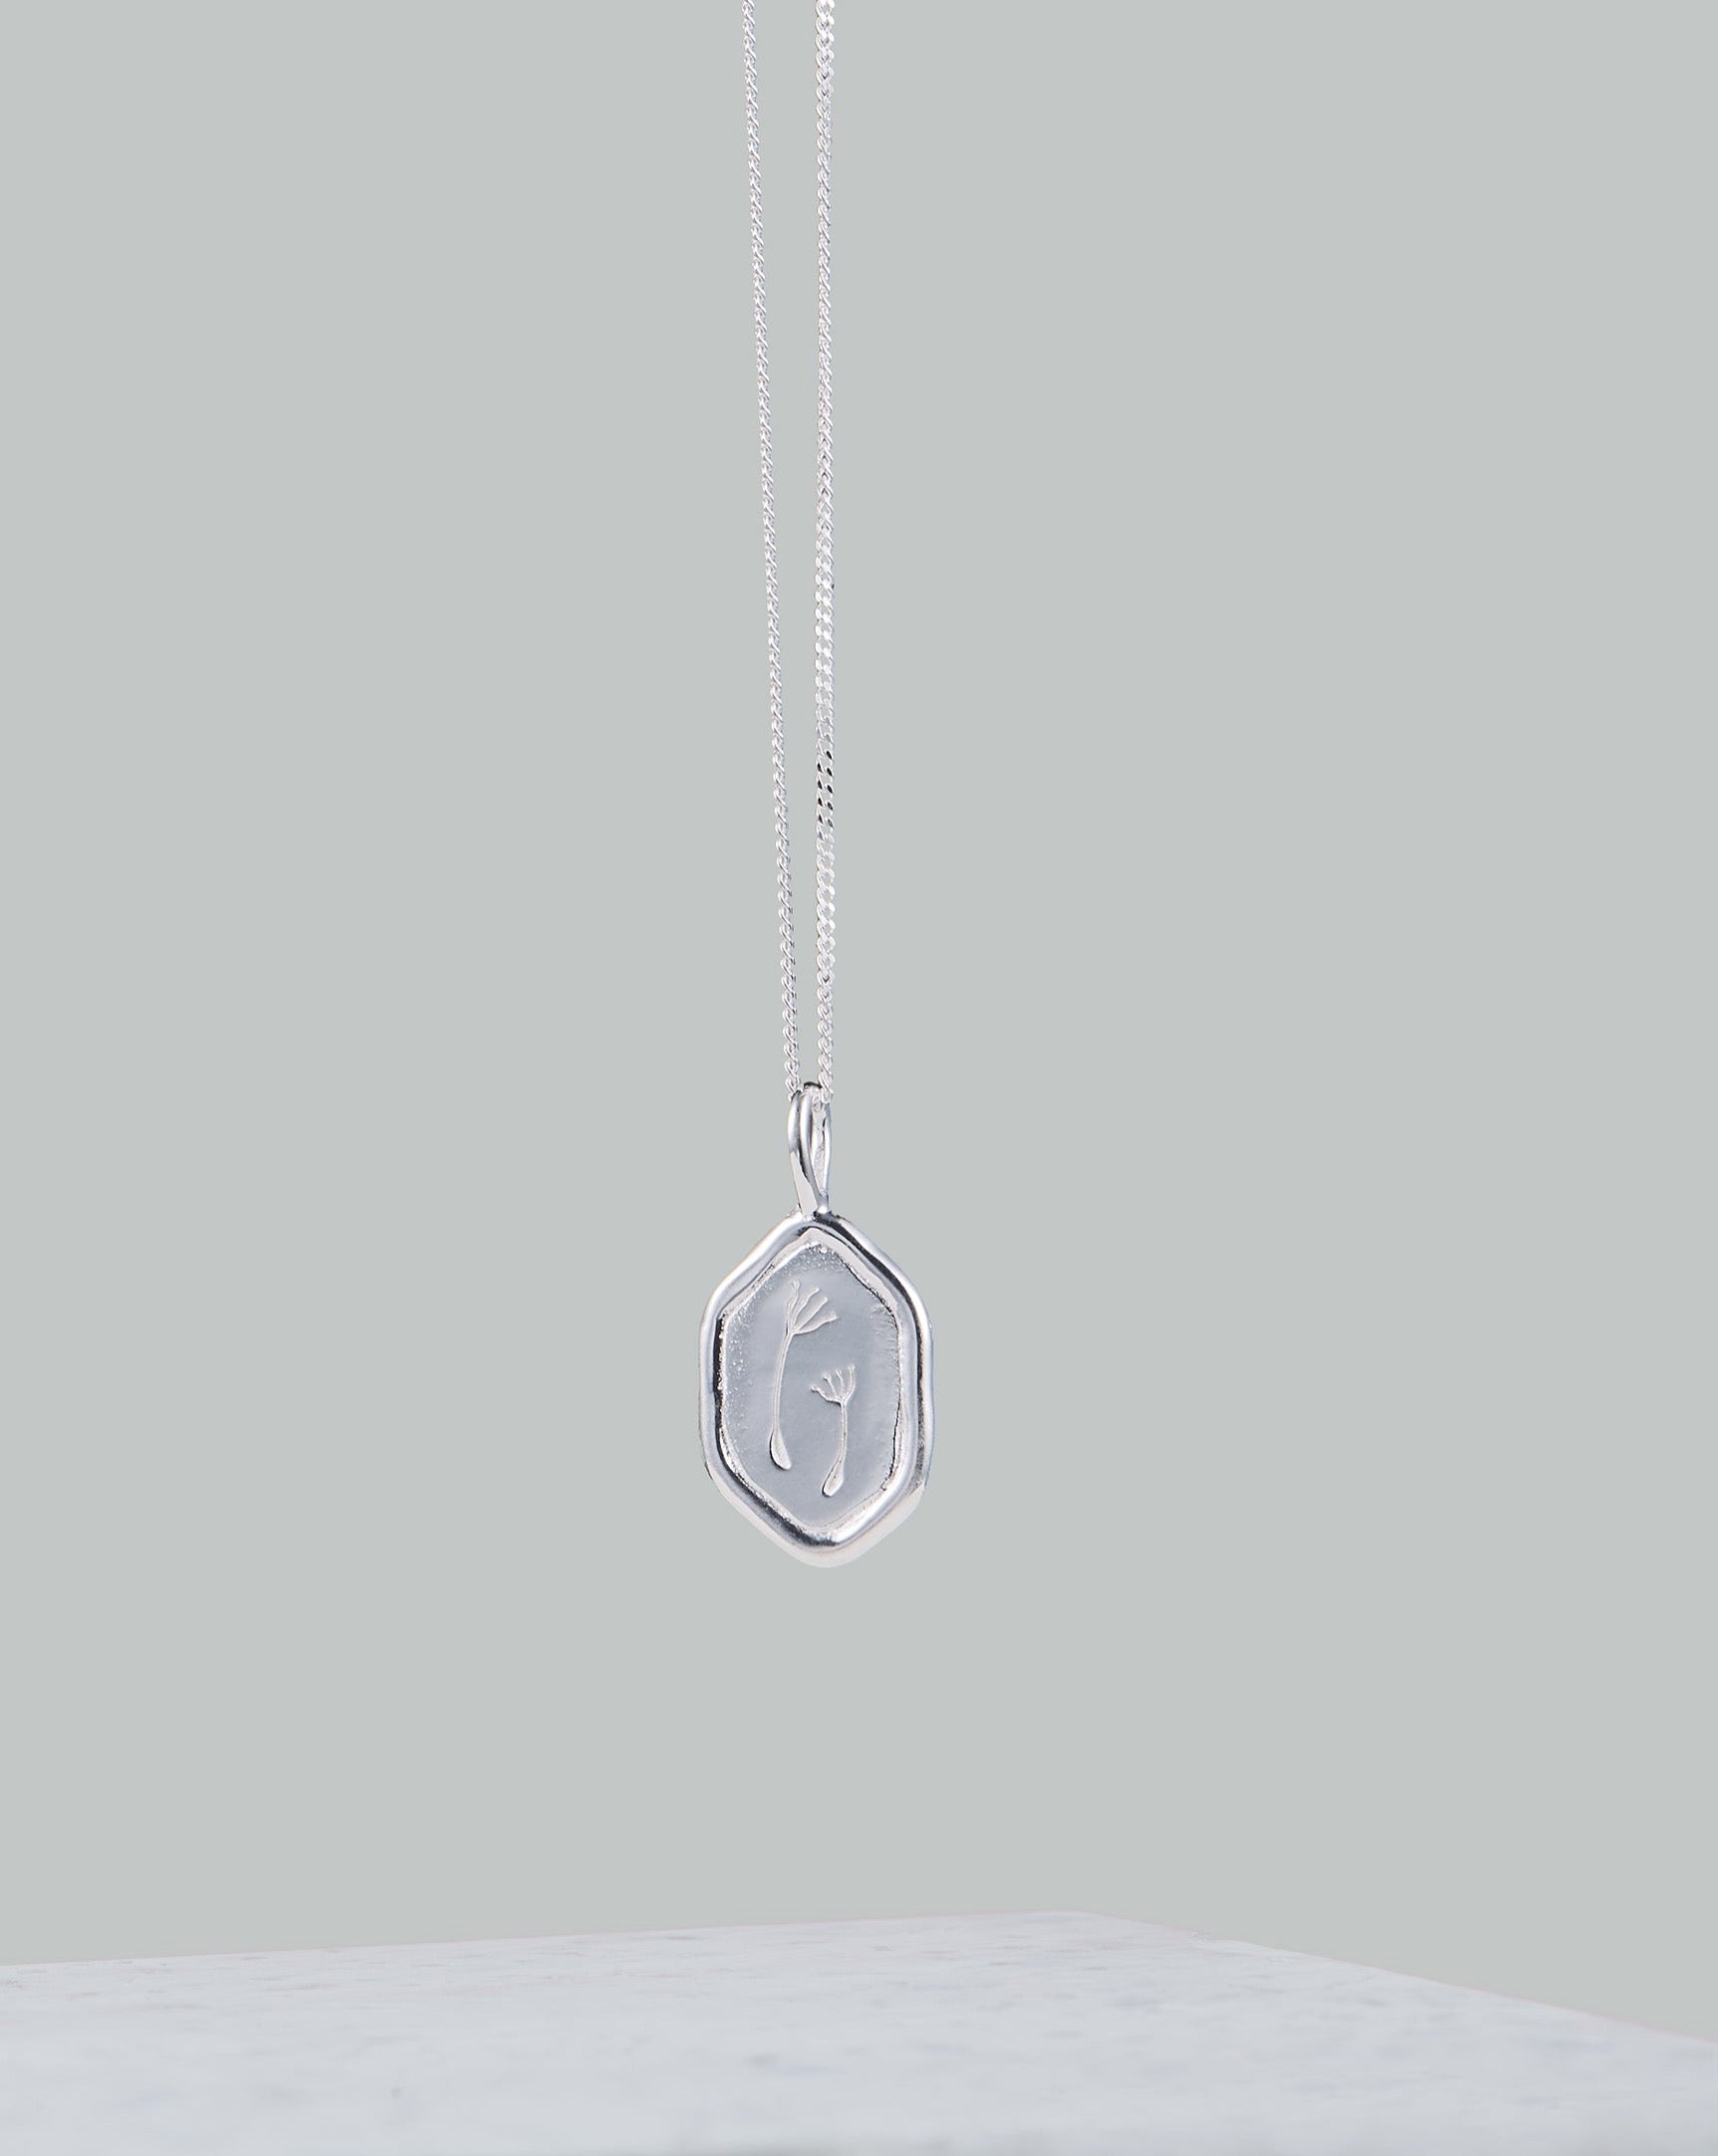 Silber Kette mit Puste Blumen | Silberner Anhänger an Silber Kette | Handgemachter Schmuck aus Bali | VERLAN Jewellery